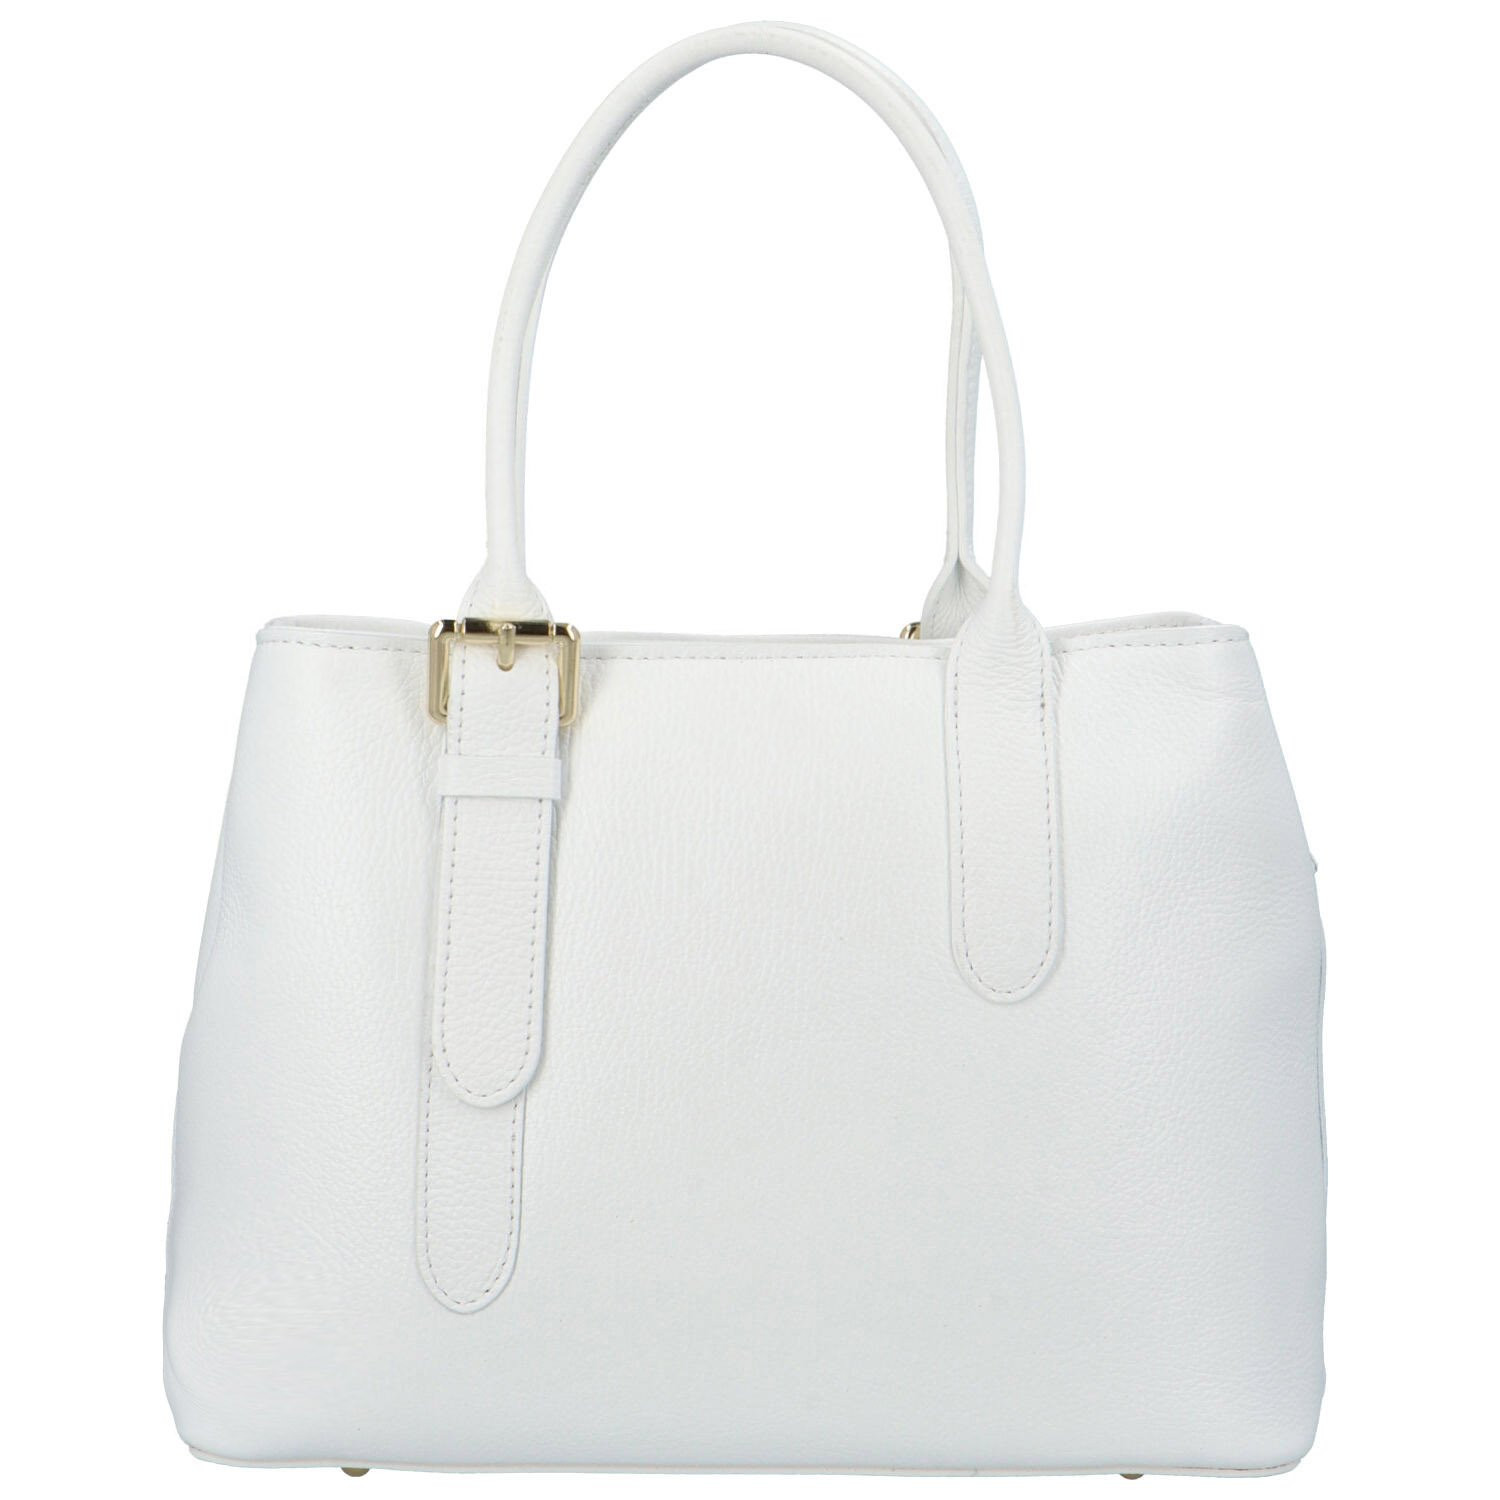 Dámská kožená kabelka do ruky bílá - Delami Solida bílá